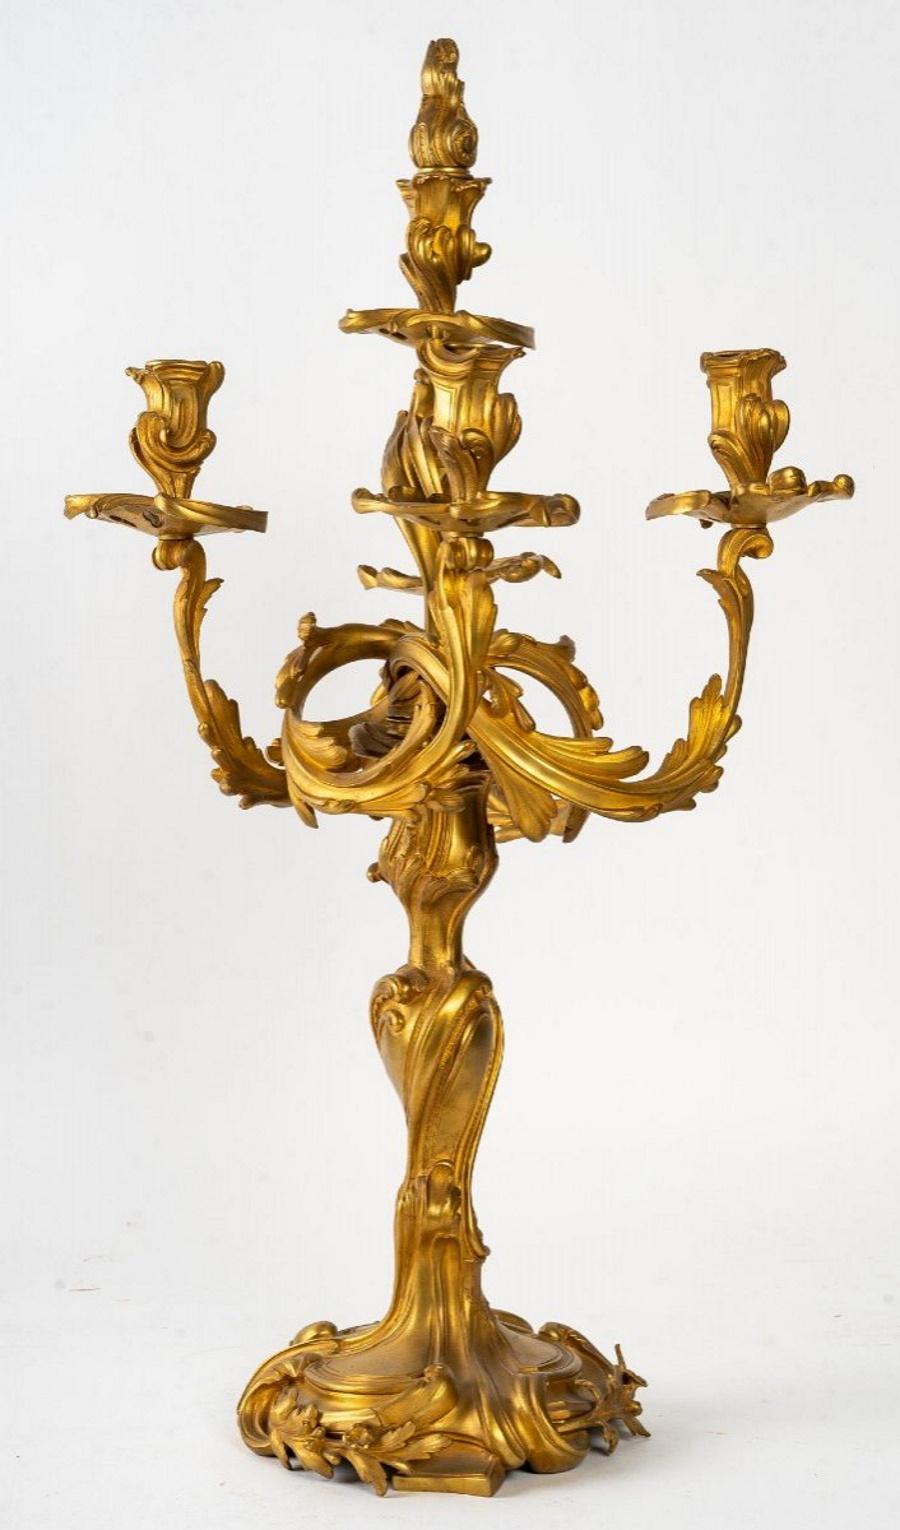 A pair of Louis XV style gilt bronze candelabras, 19th century
Measures: H: 67 cm, W: 32 cm, D: 29 cm.